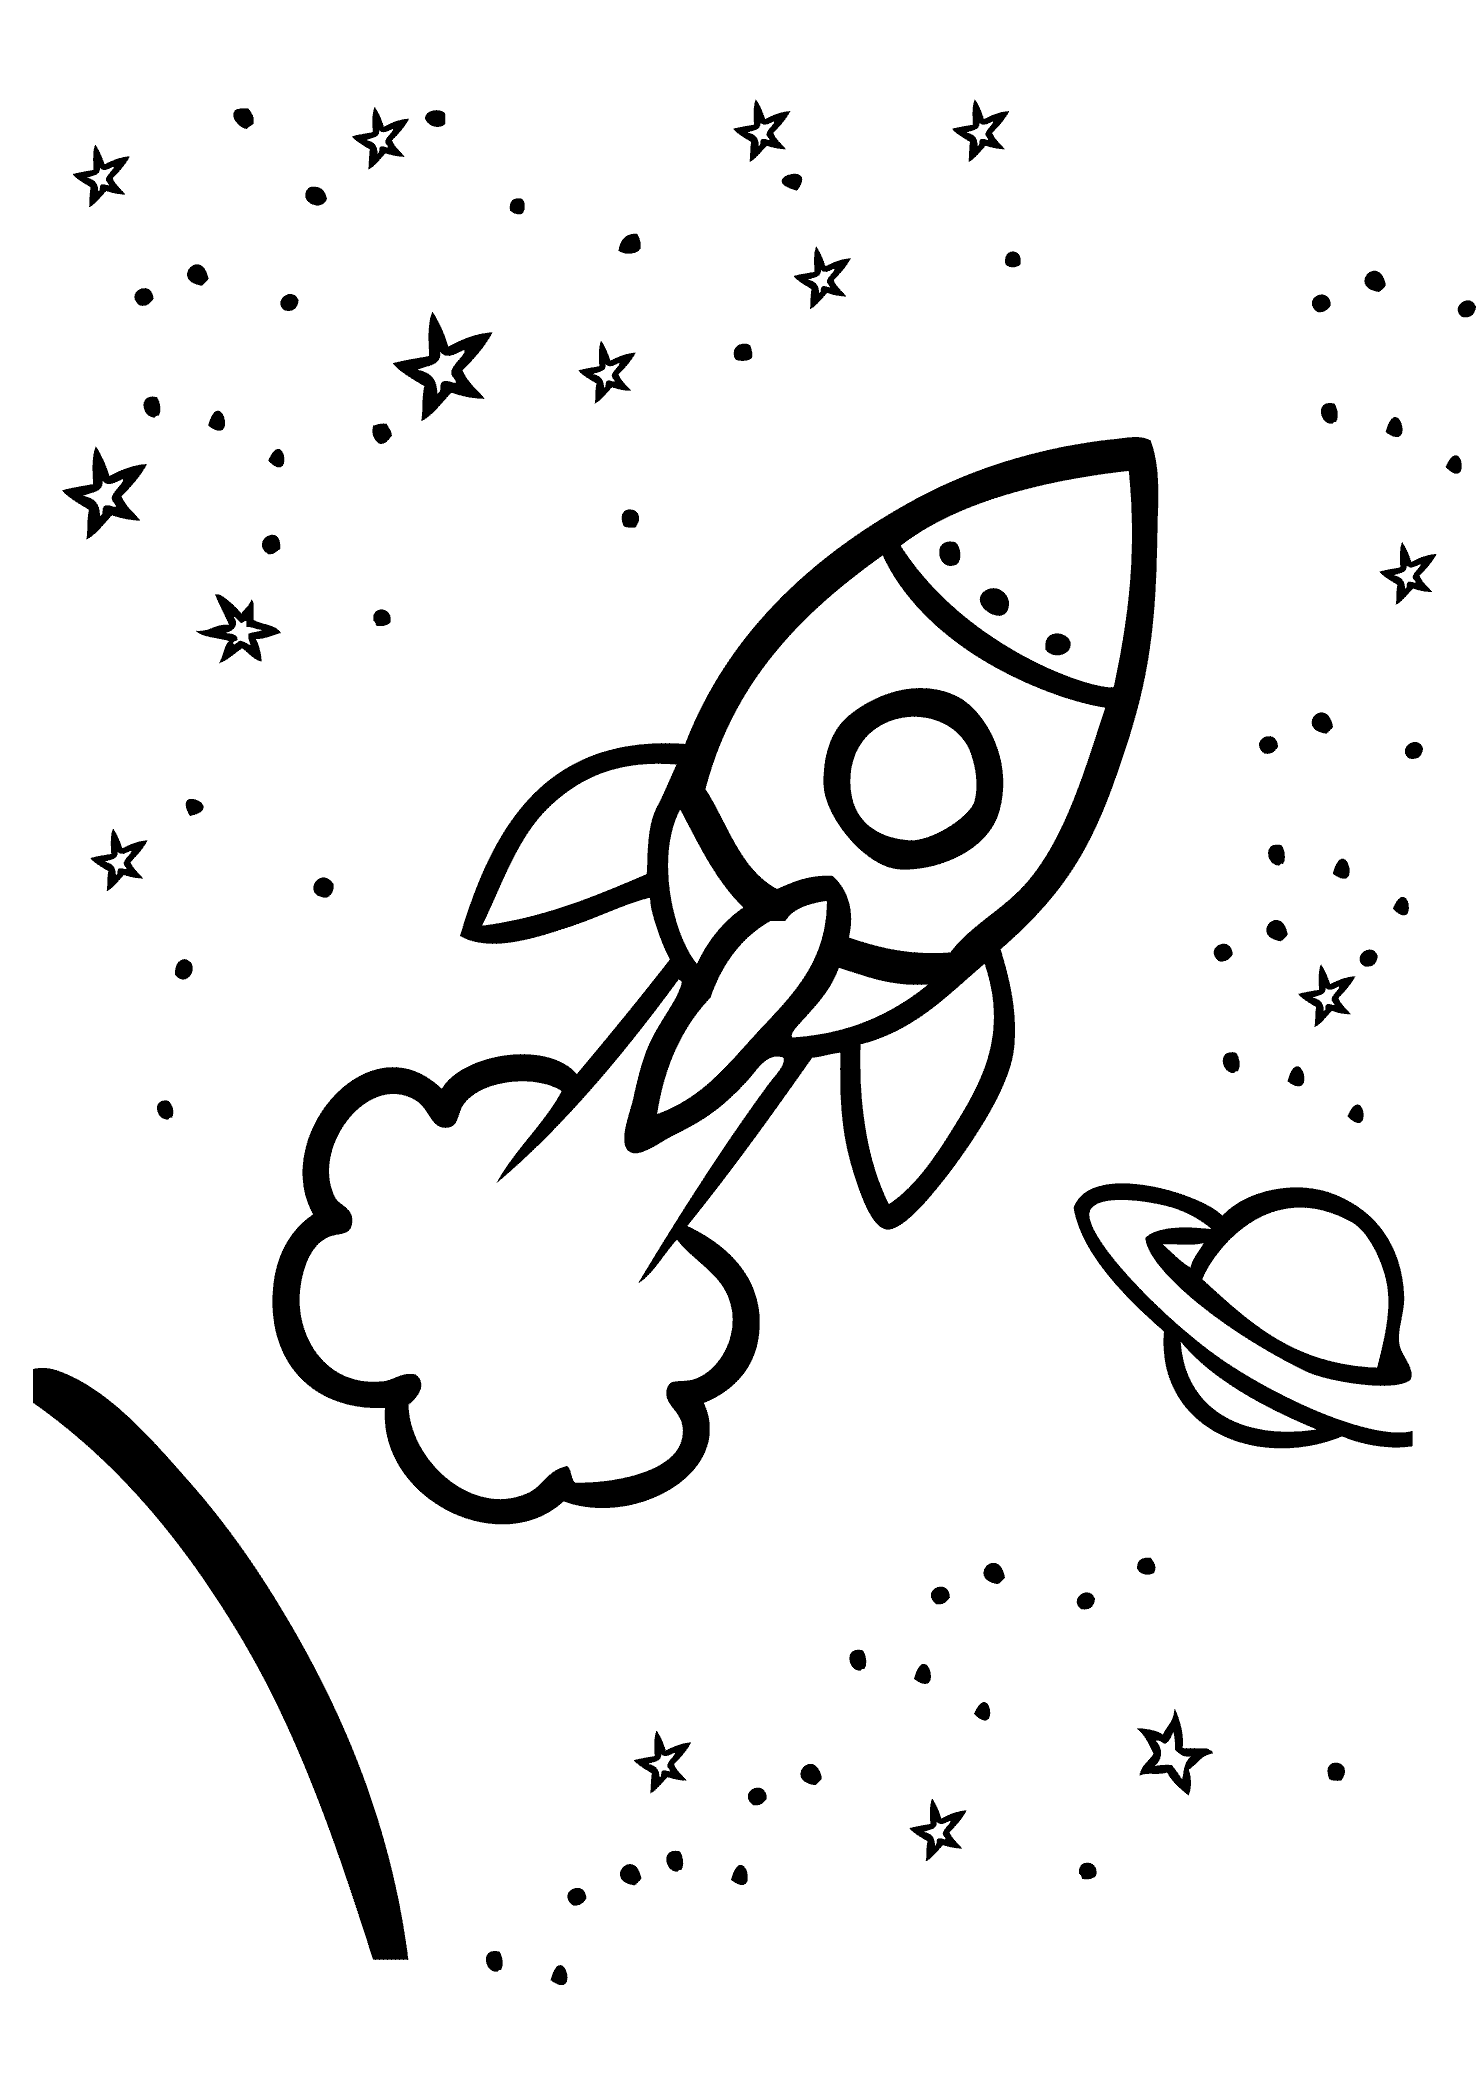 Раскраска ракета в космосе для детей. Раскраска. В космосе. Ракета раскраска. Космос раскраска для детей. Раскраска ракета в космосе.